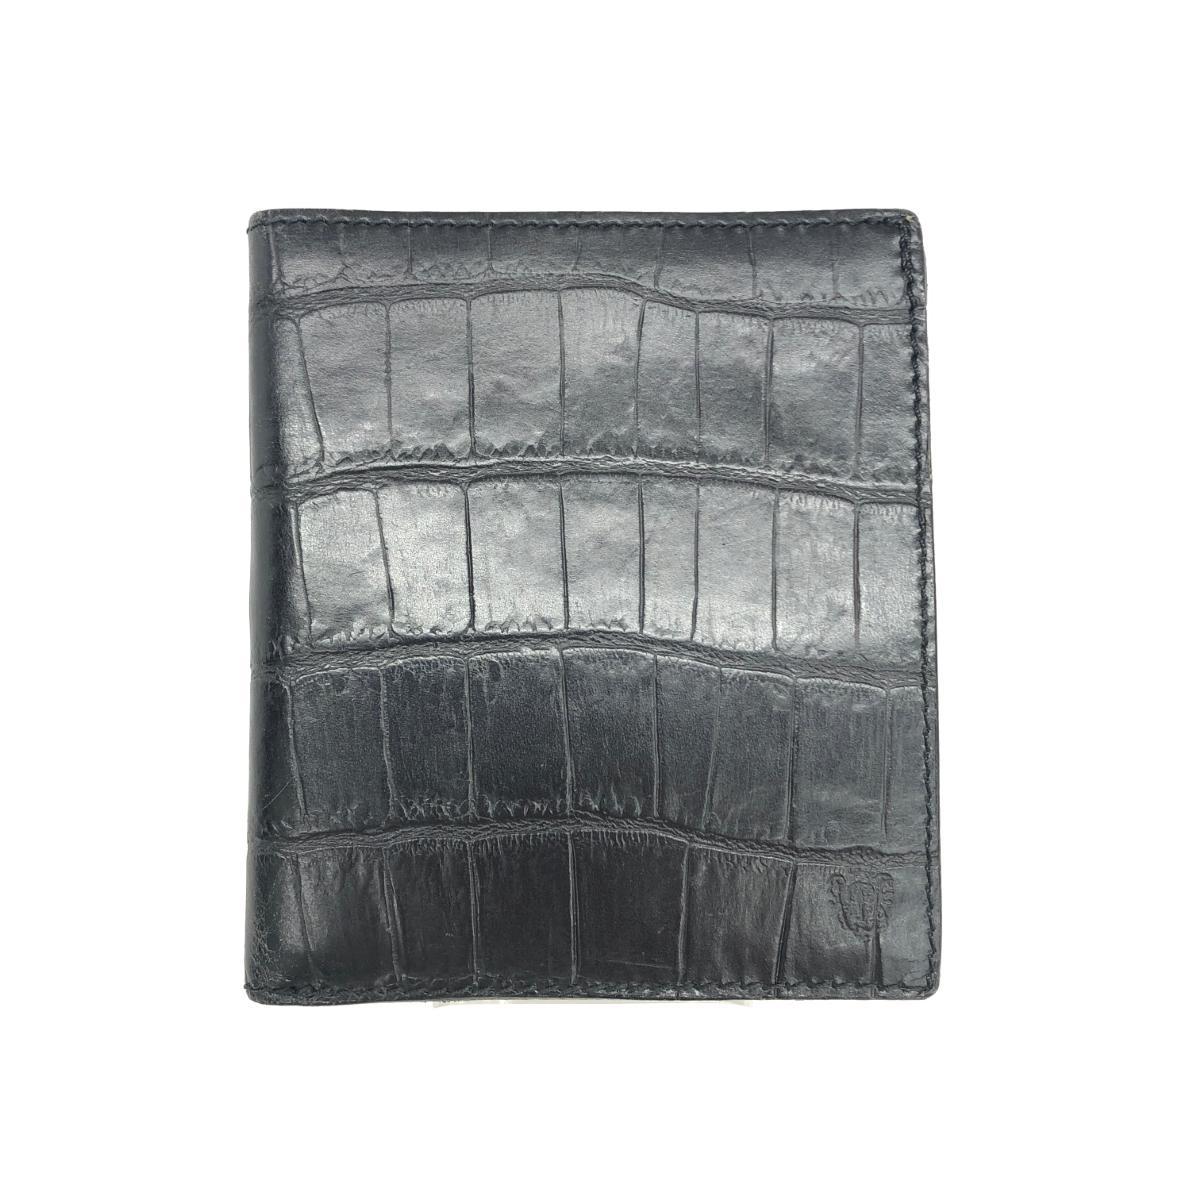 ◆Felisi フェリージ 二つ折り財布◆709 ブラック レザー クロコ型押し メンズ 財布 ウォレット サイフ 札入れ_画像1